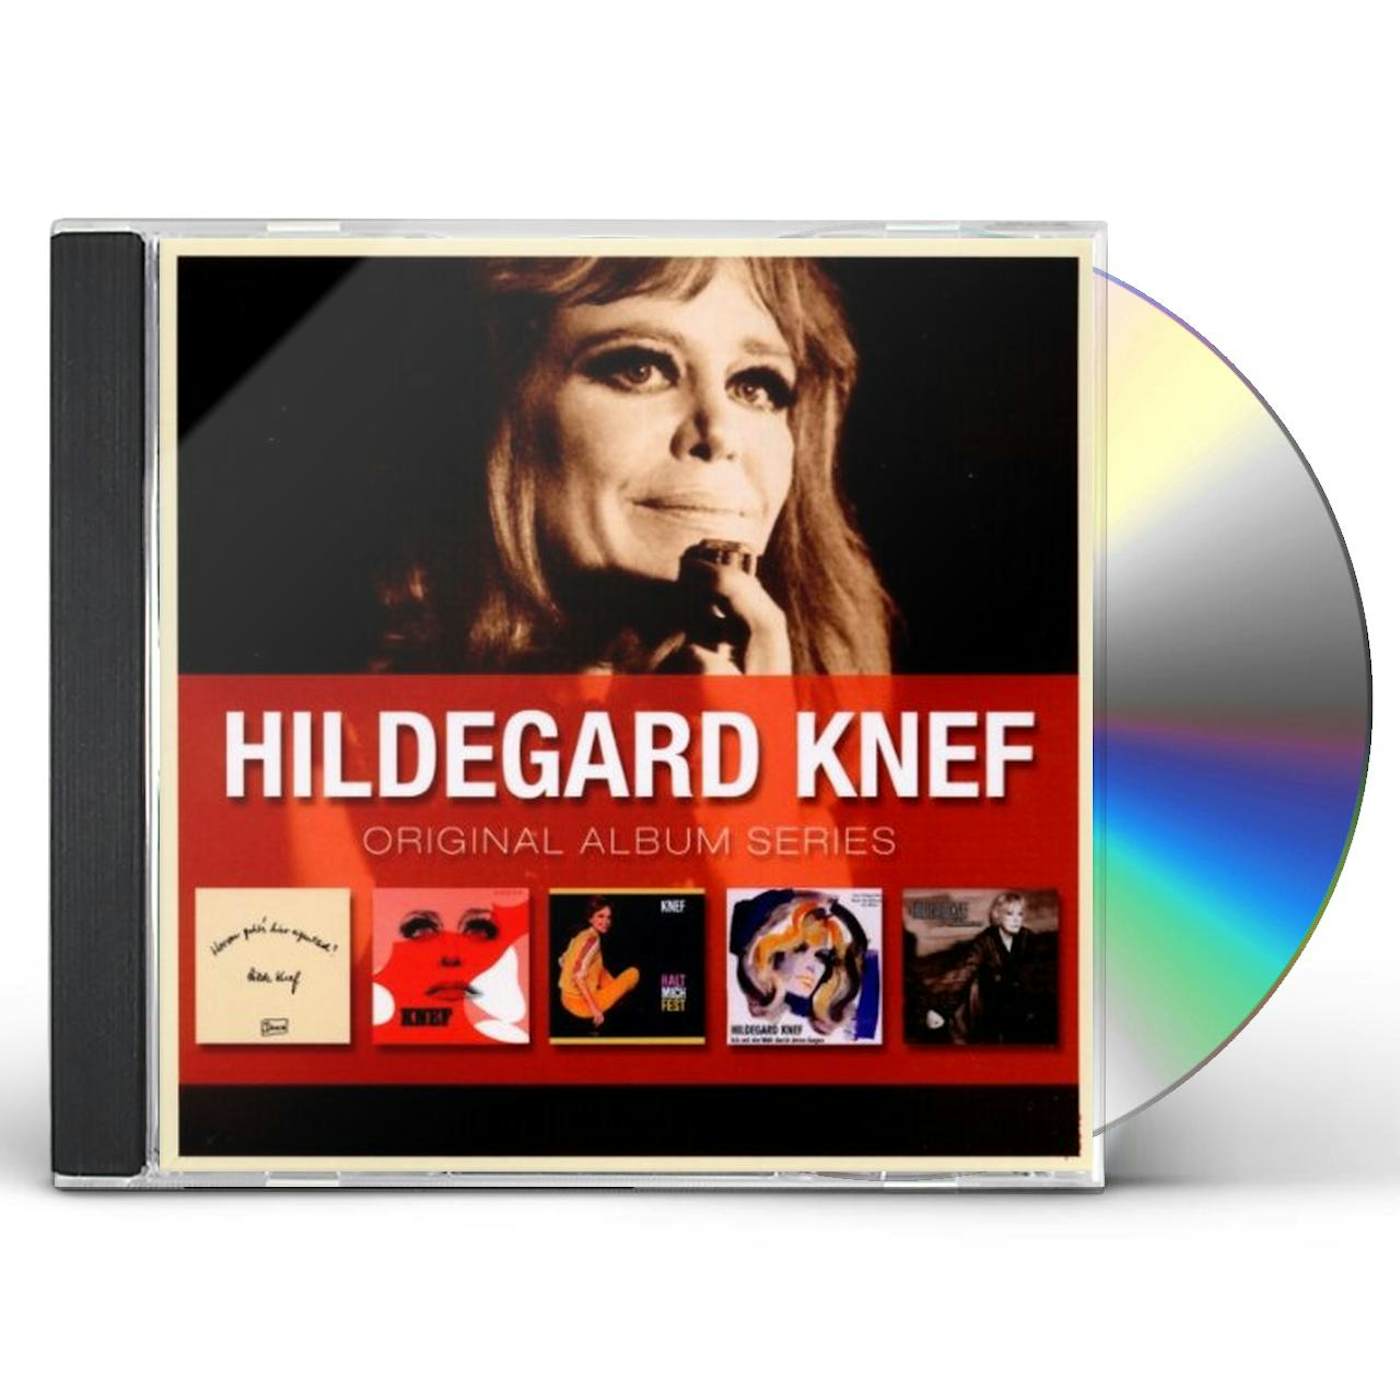 Hildegard Knef ORIGINAL ALBUM SERIES CD